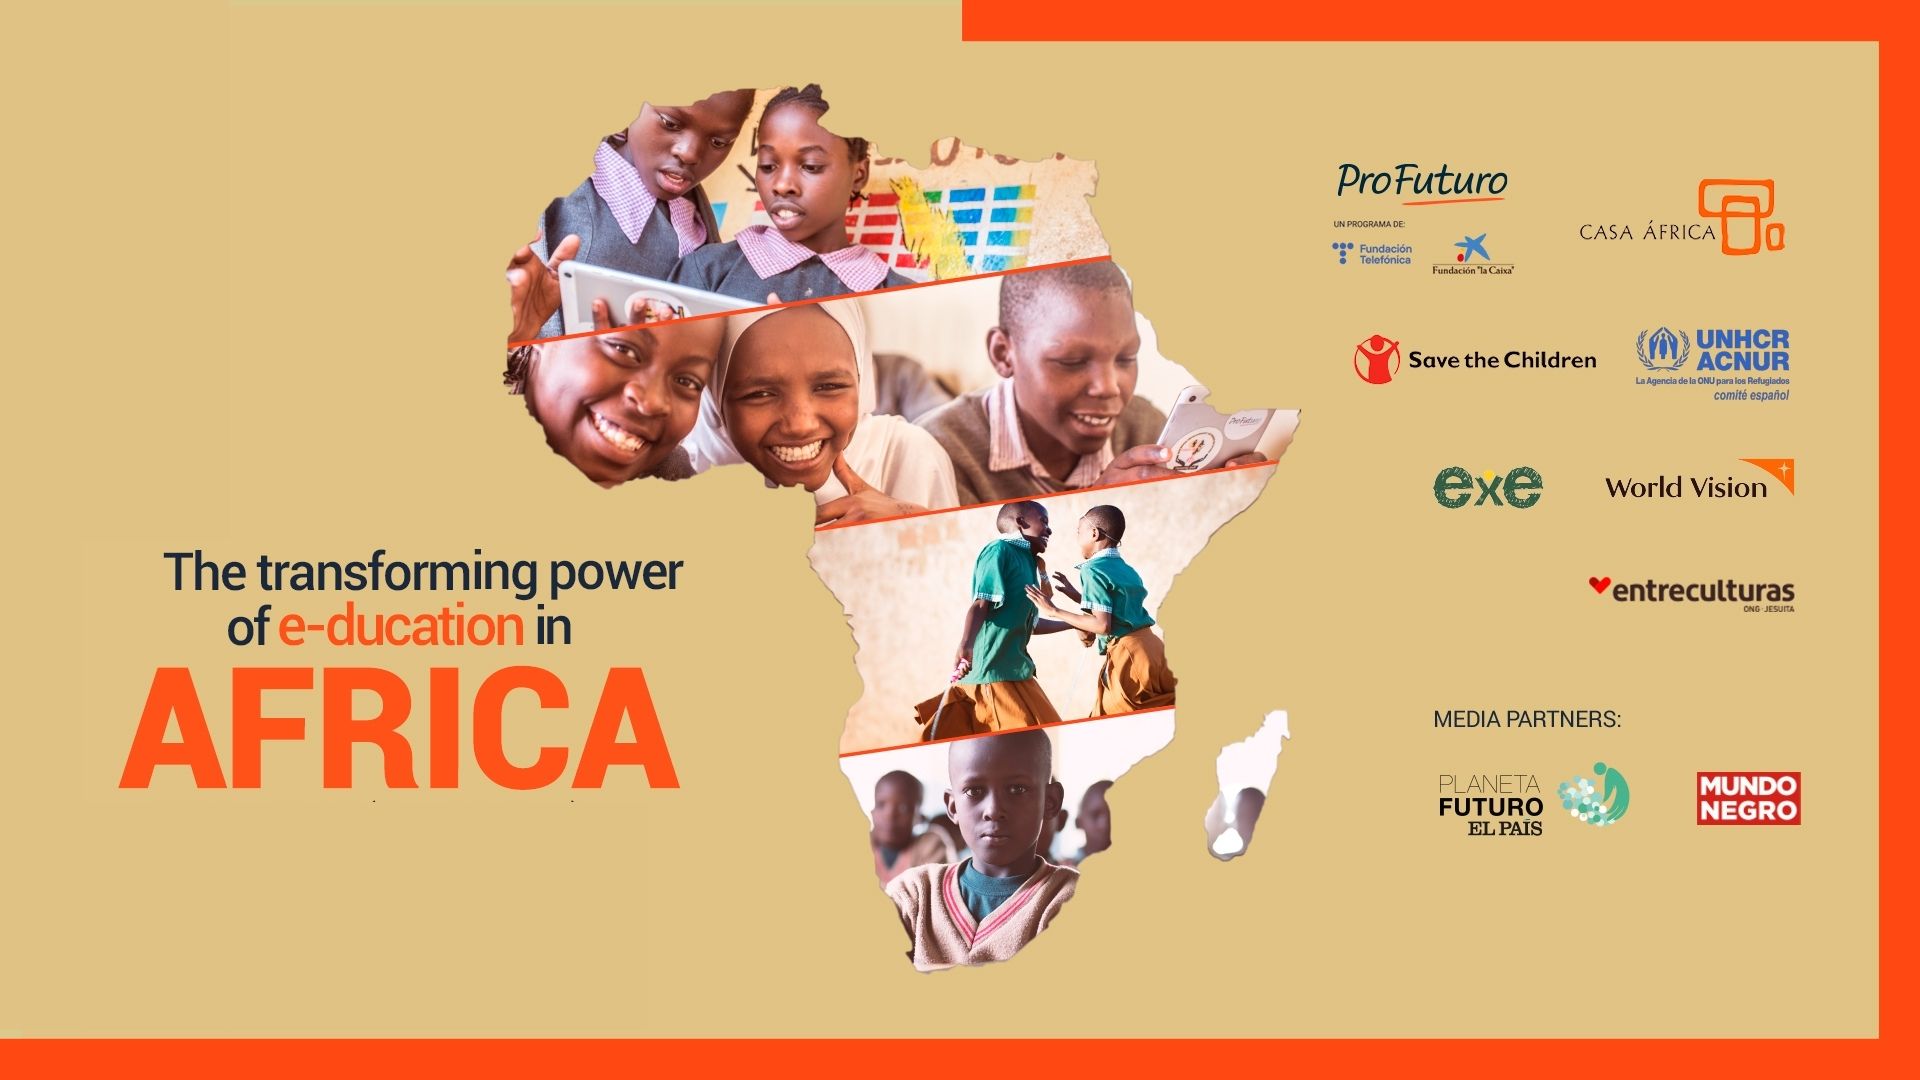 O poder transformador da e-ducação na África